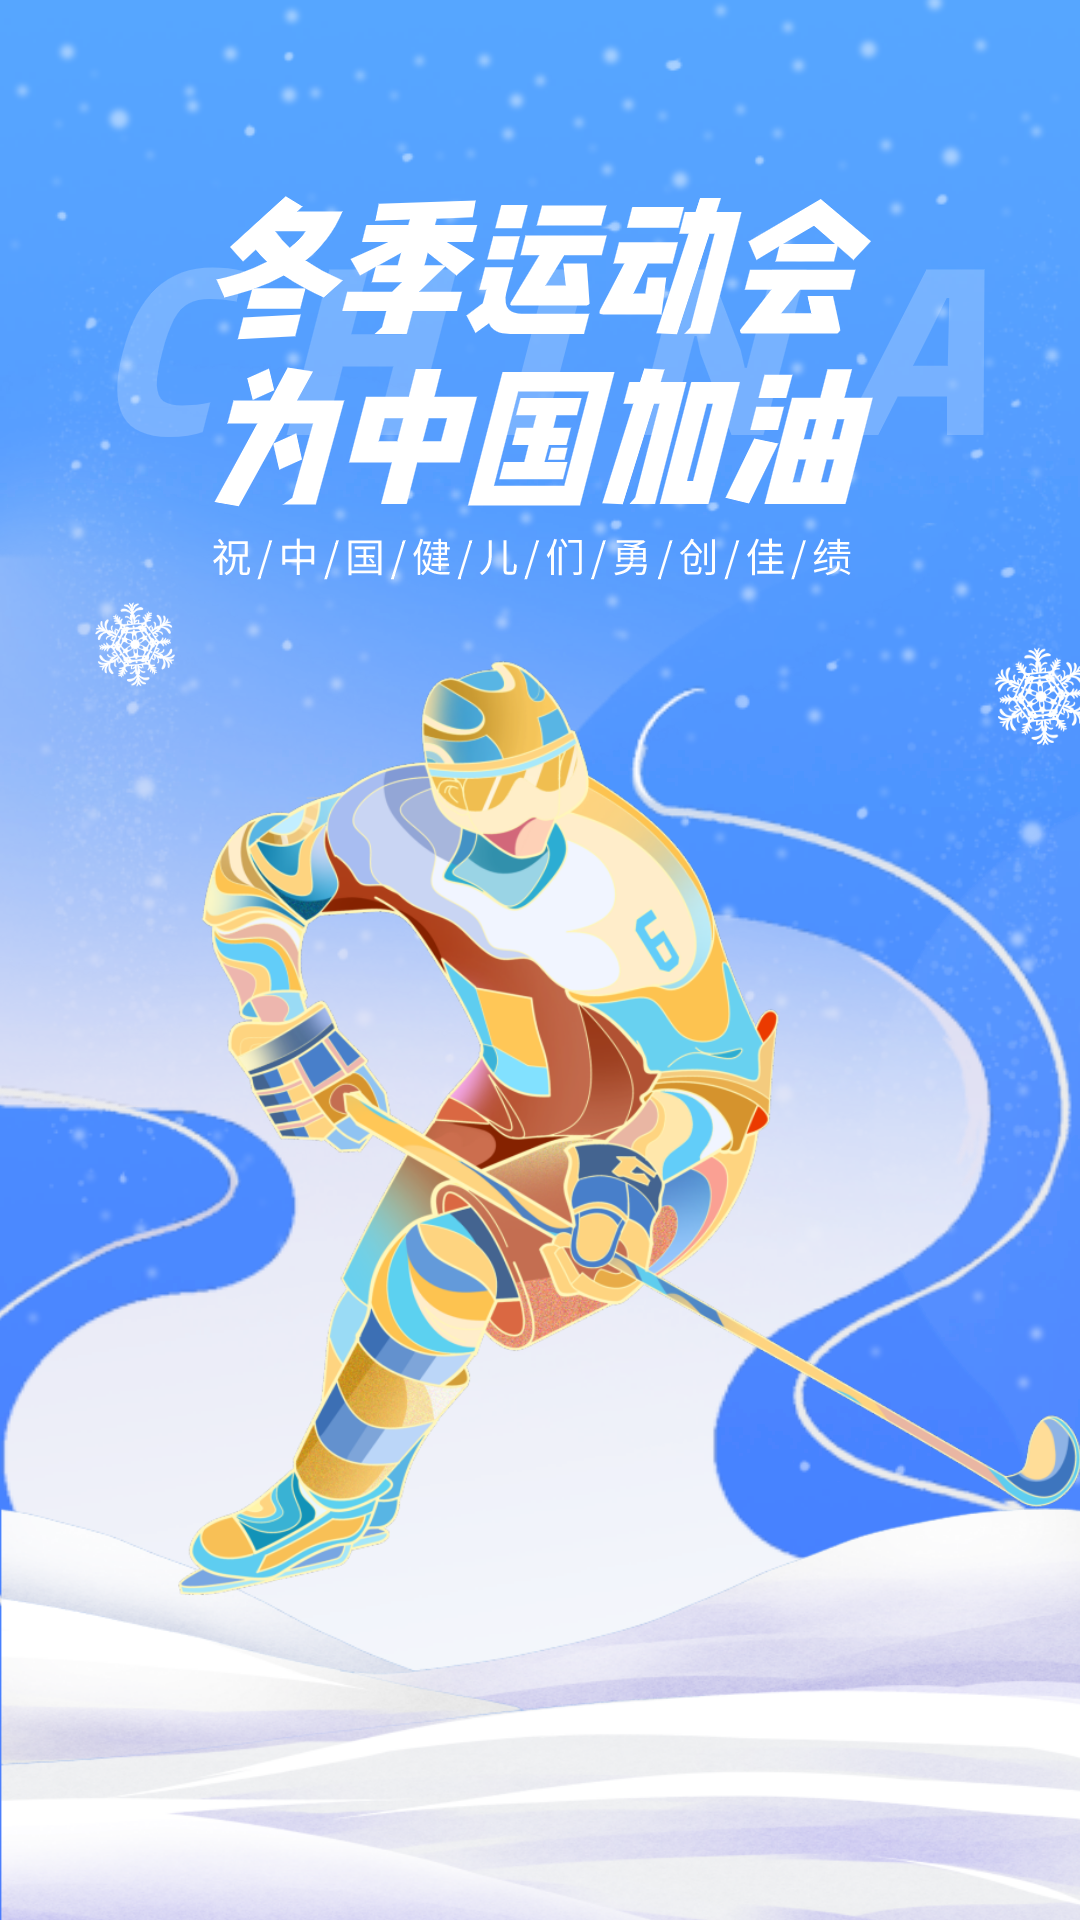 北京冬奥会文案图片